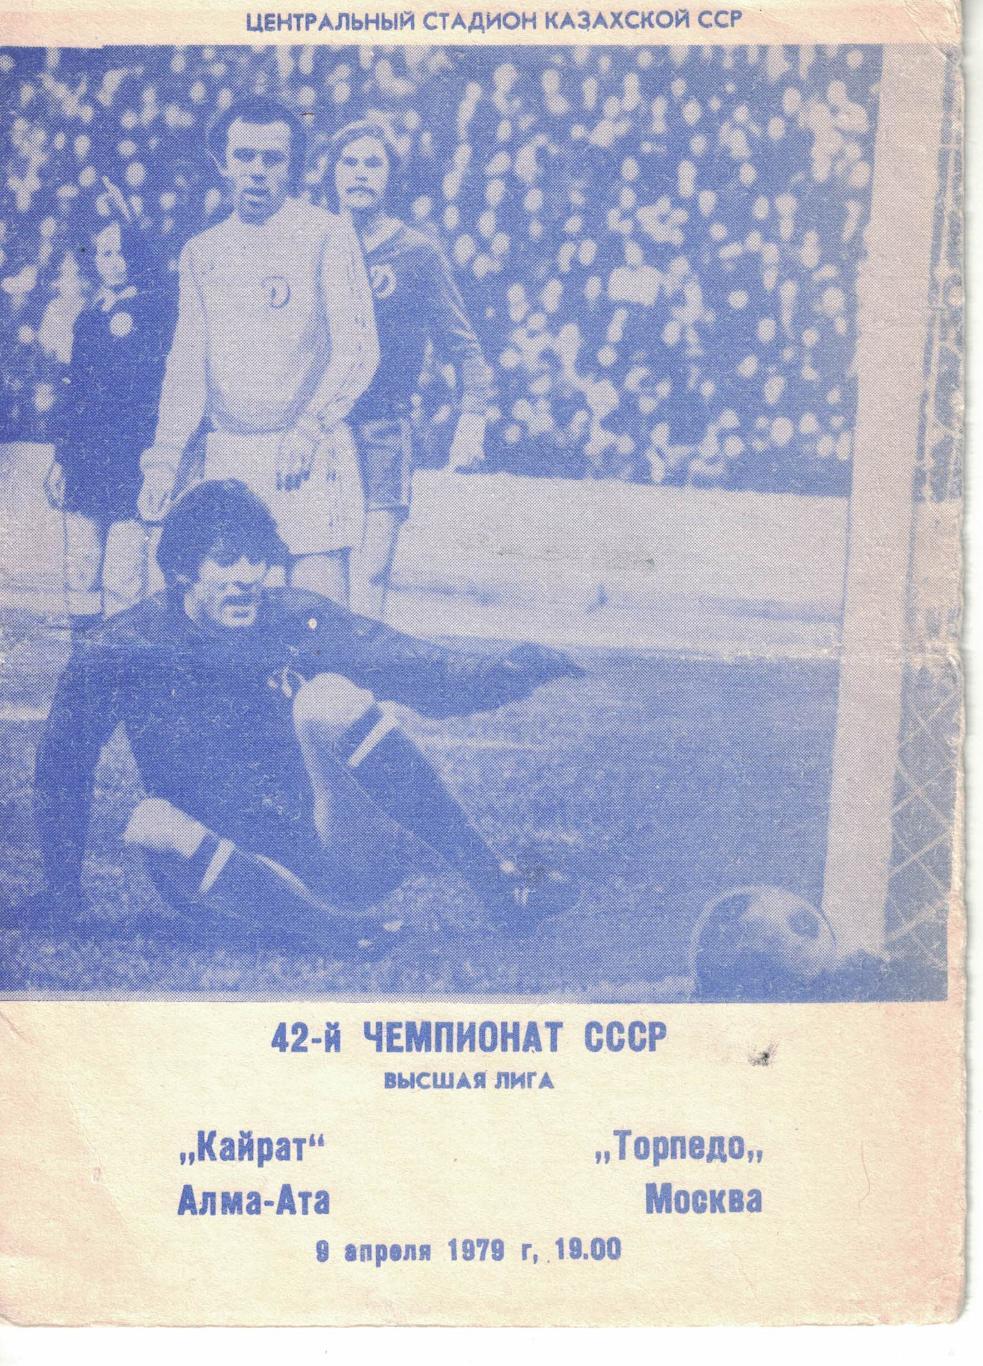 Кайрат Алма-Ата - Торпедо Москва 09.04.1979 Чемпионат СССР 1